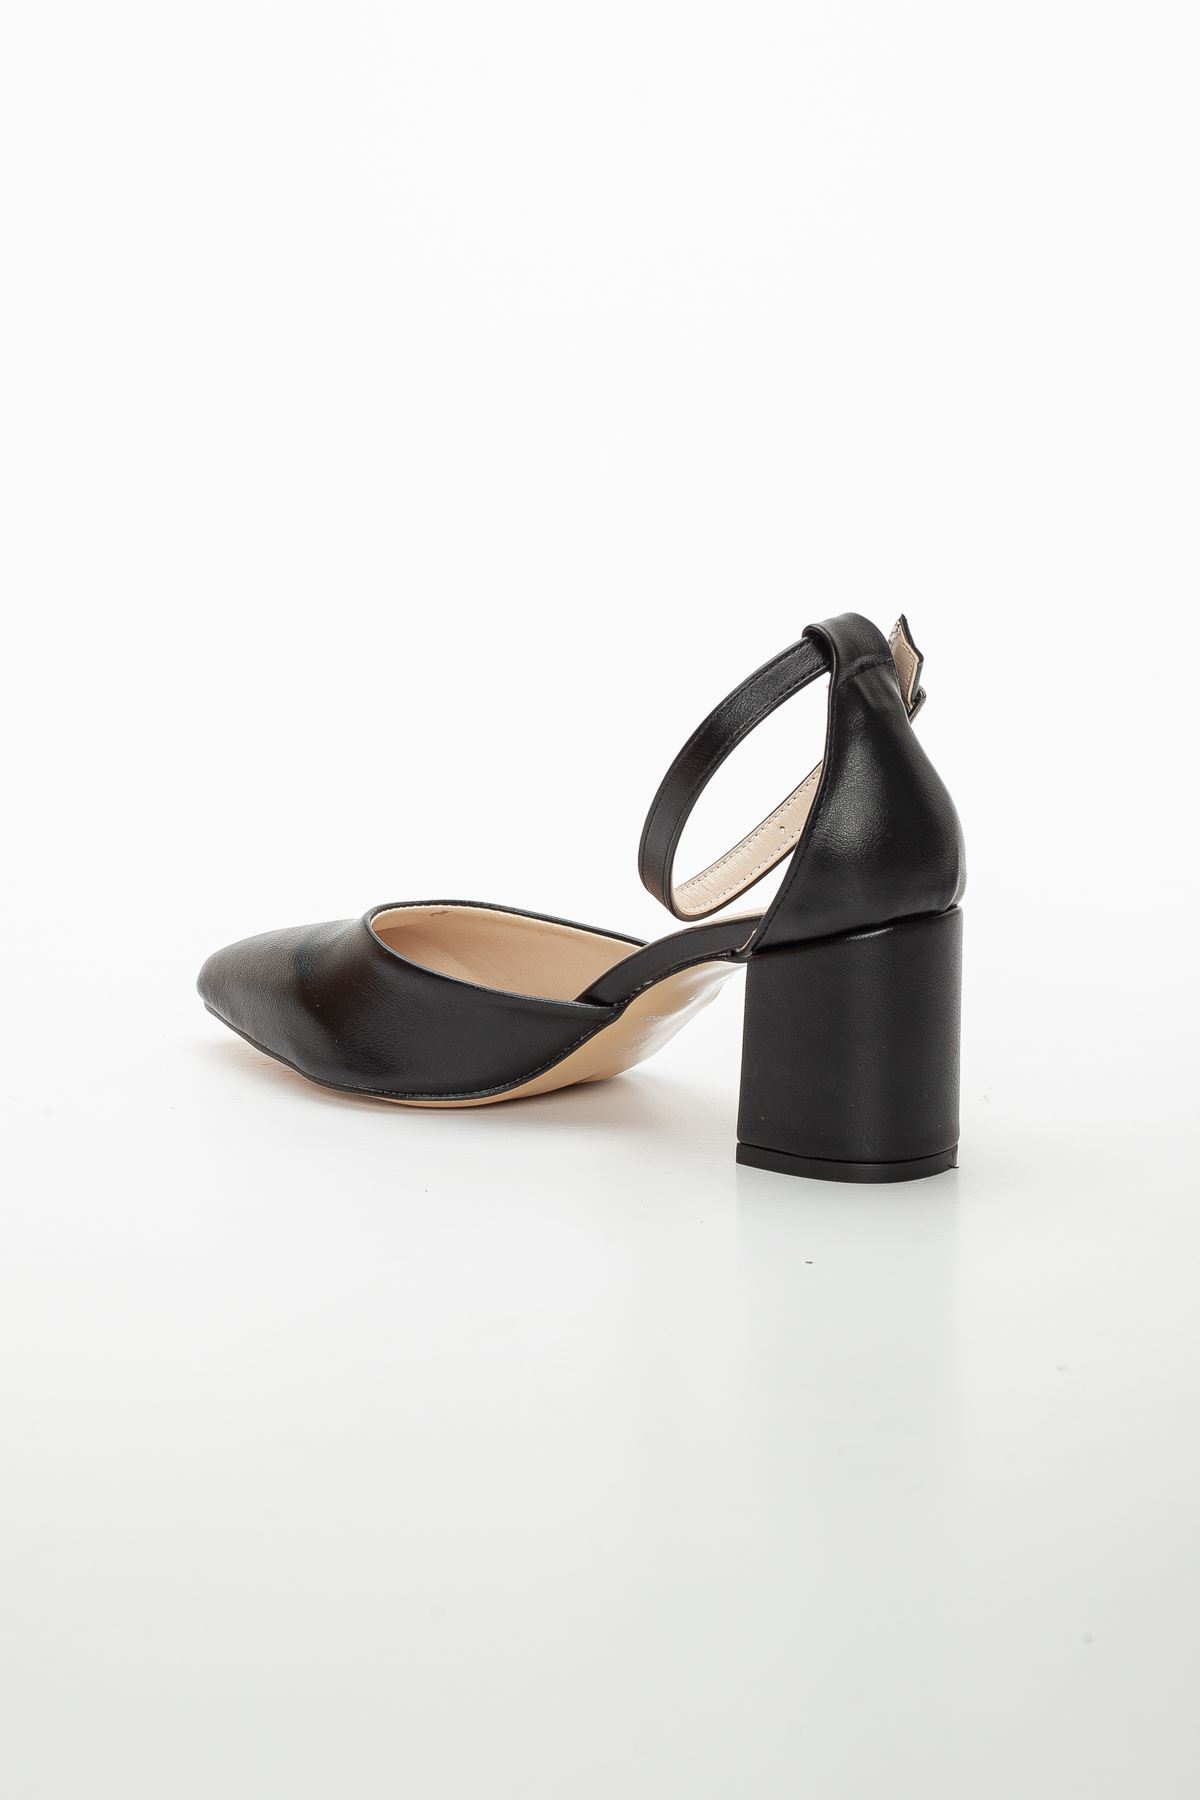 Suzy Topuklu Ayakkabı Siyah